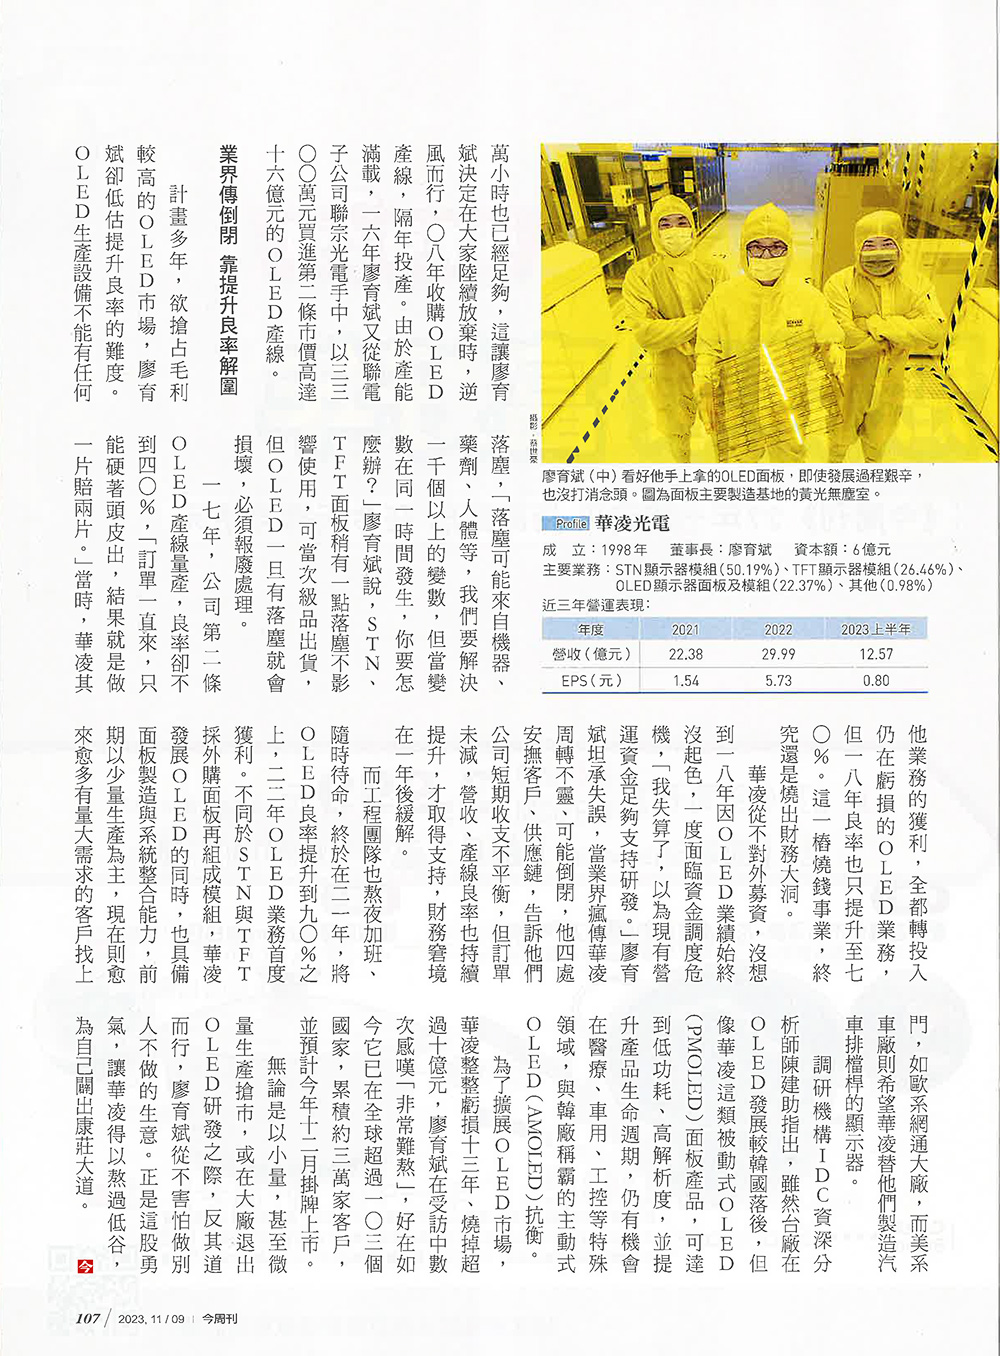 【今周刊】華凌擁有三萬客戶 翻身工控顯示器軍火庫 報導